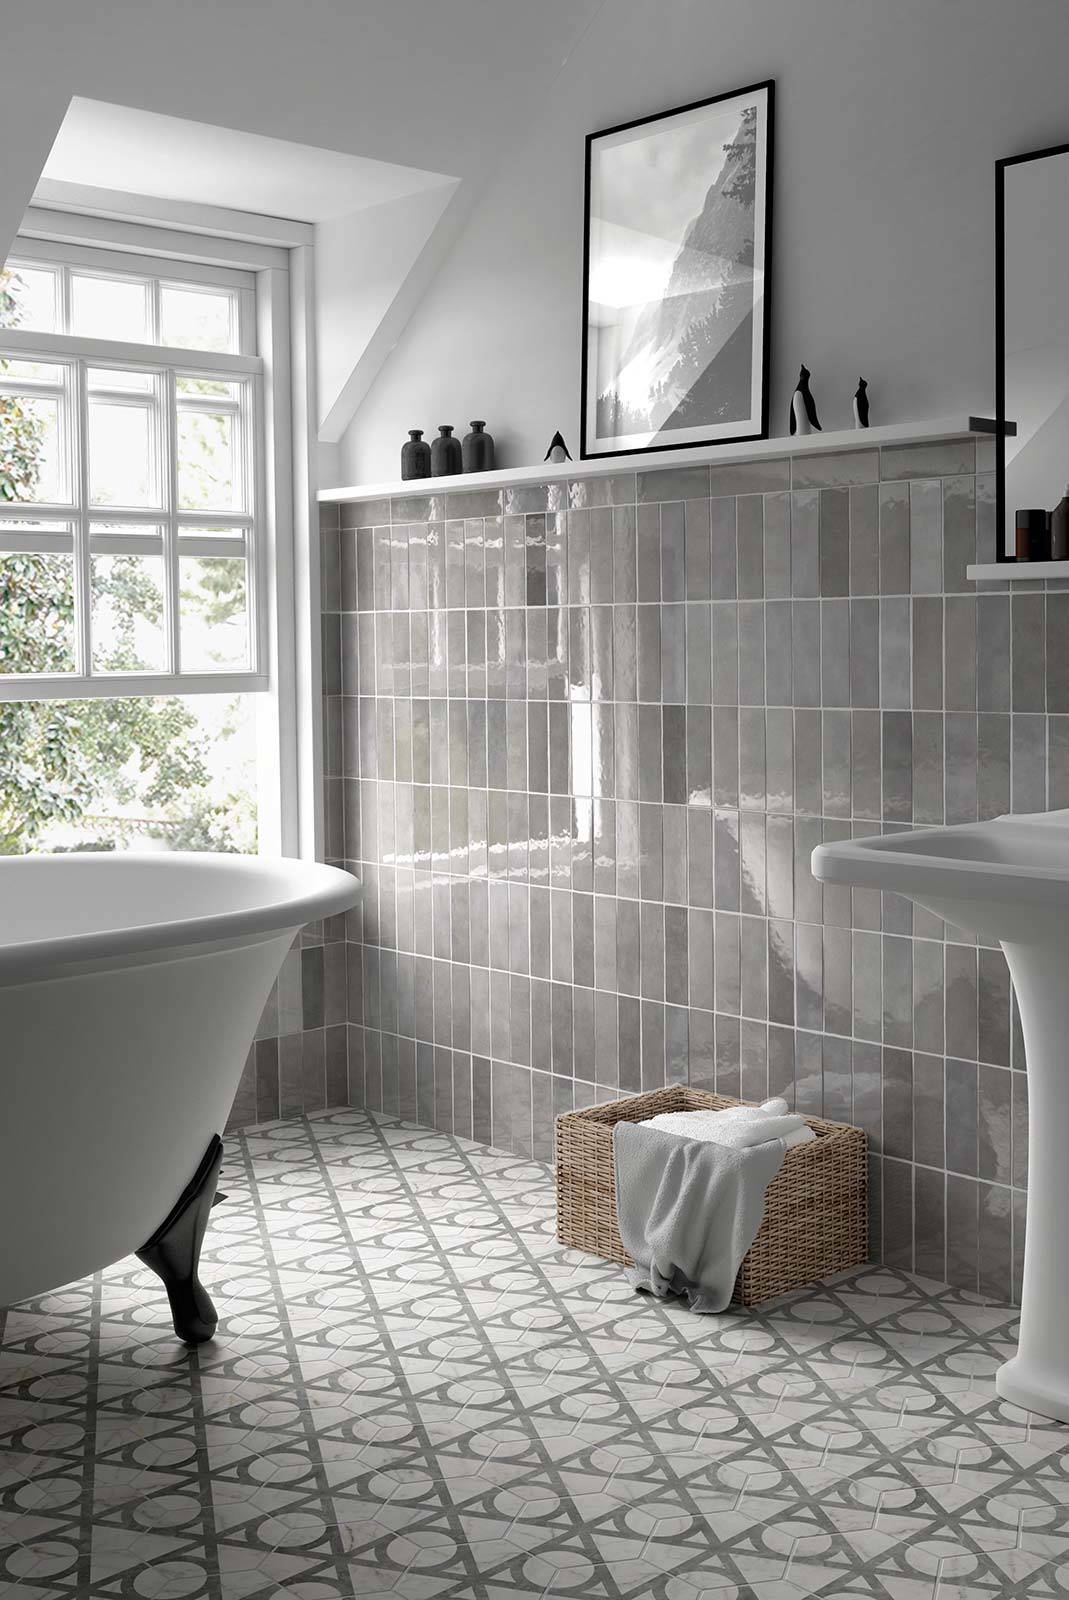 Baño con azulejos rectangulares en la pared y hexagonales en el suelo.